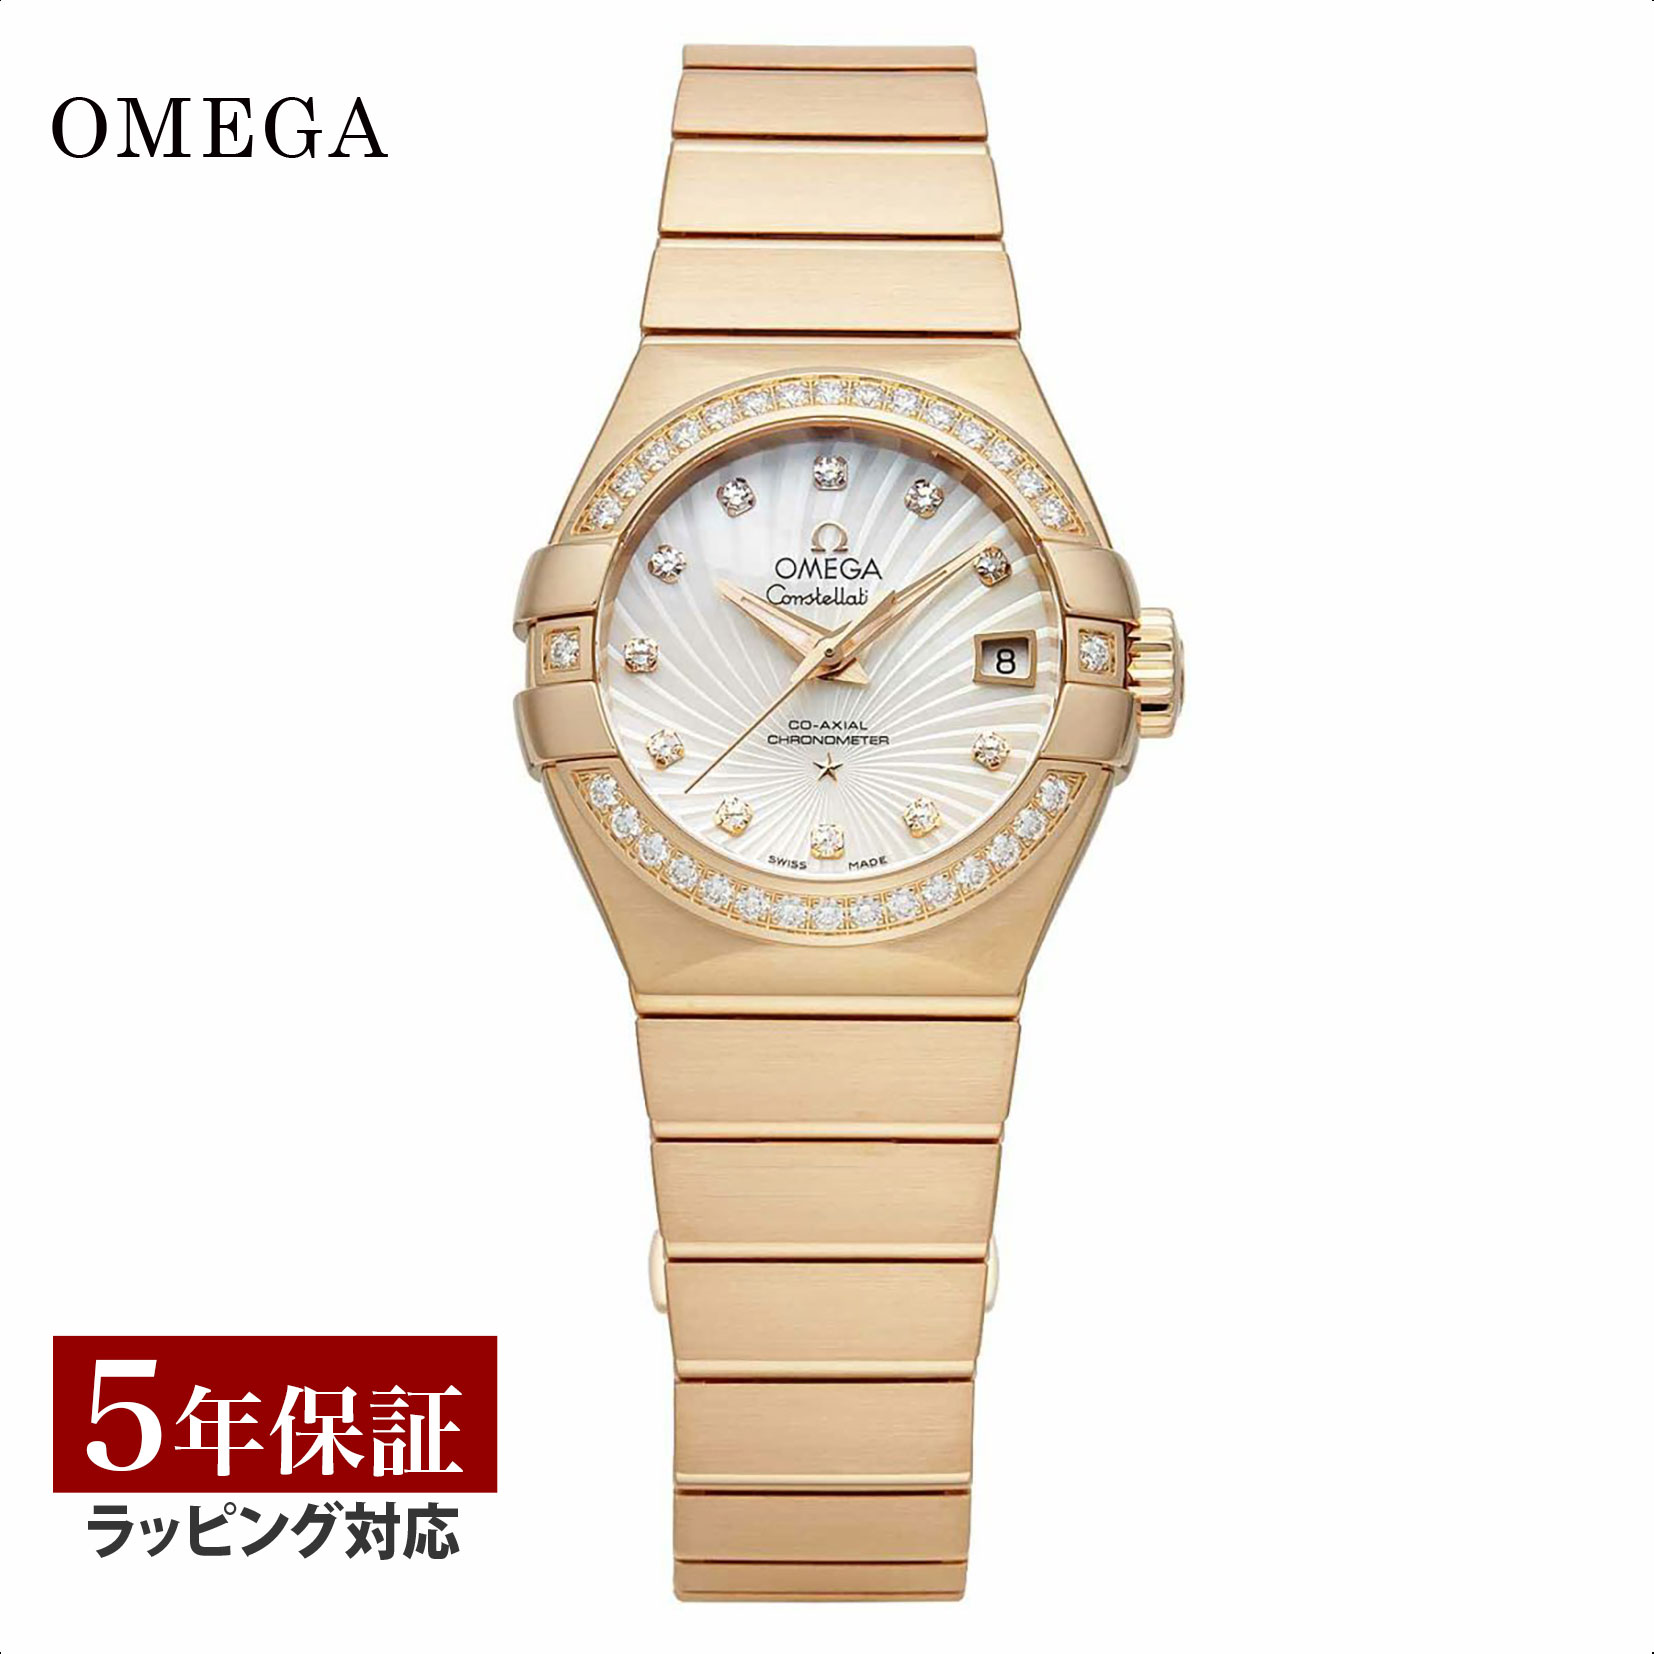 【当店限定】 オメガ OMEGA レディース 時計 CONSTELLATION コンステレーション コーアクシャル 自動巻 ホワイトパール 123.55.27.20.55.001 時計 腕時計 高級腕時計 ブランド